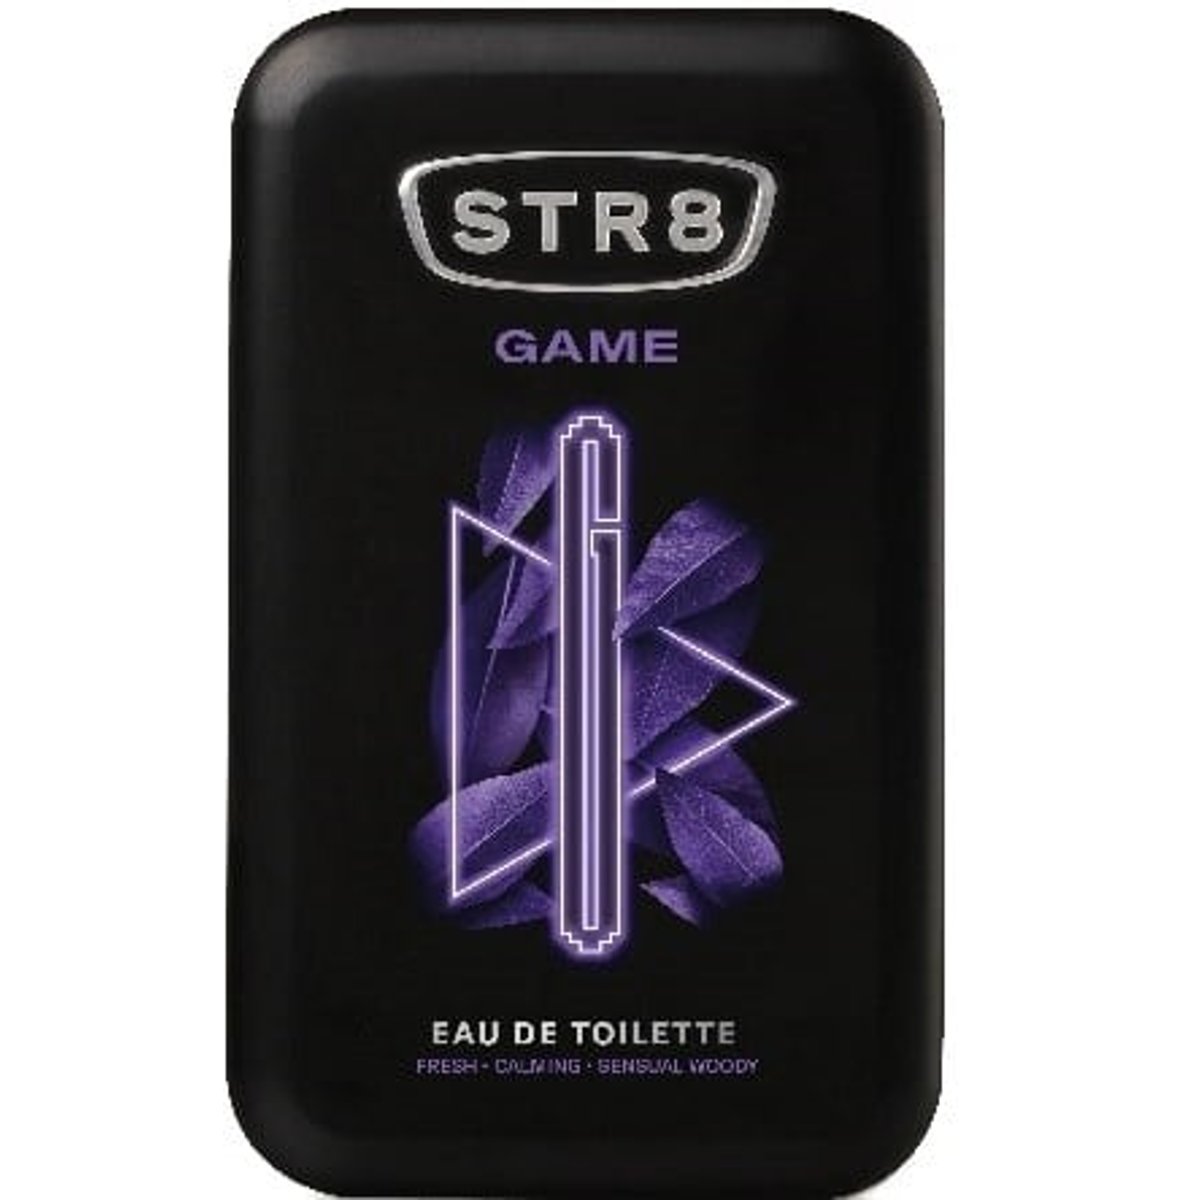 STR8 Game toaletní voda